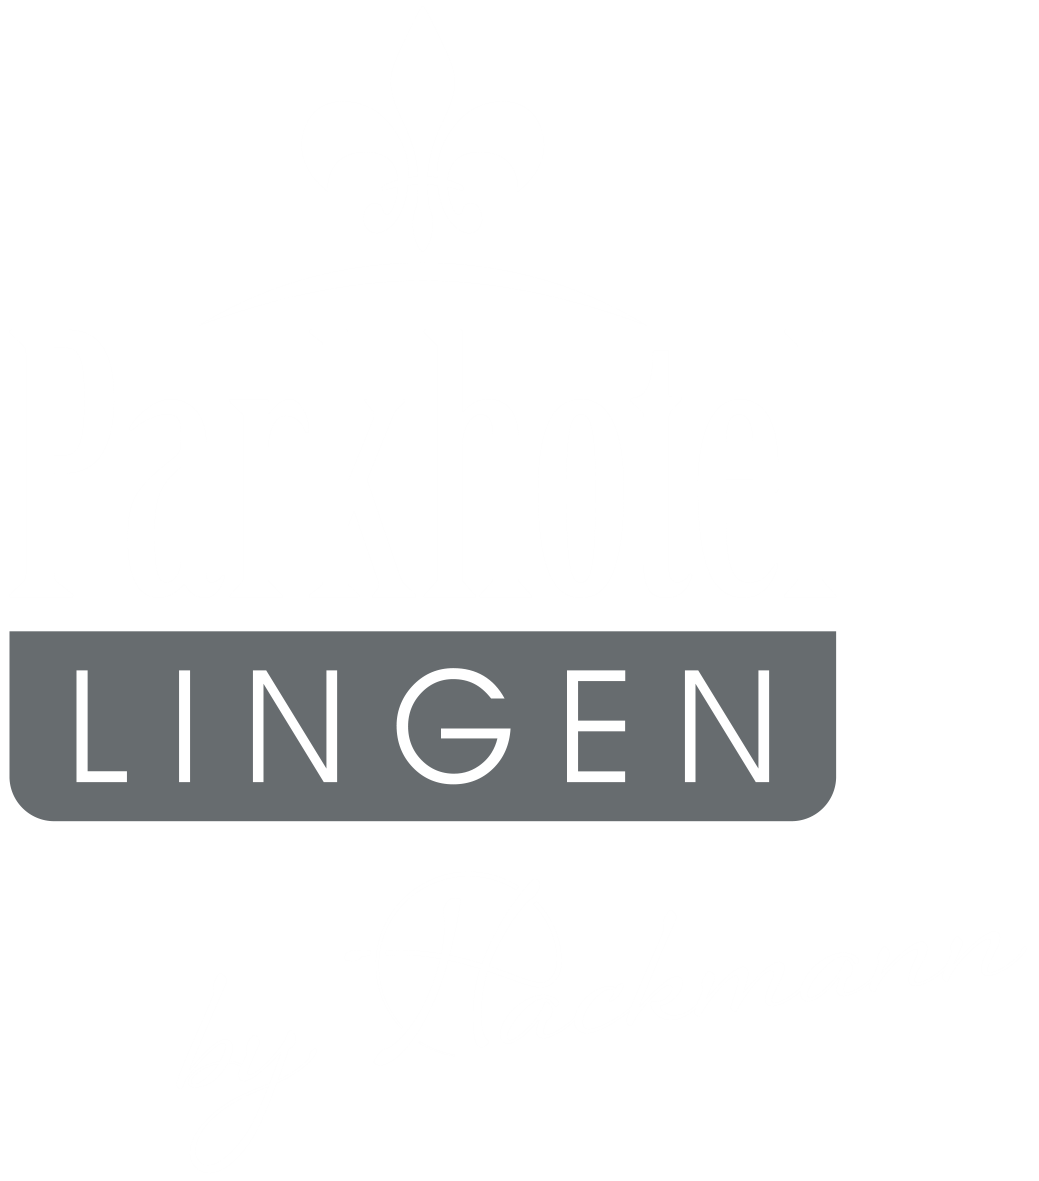 Parkhotel Lingen